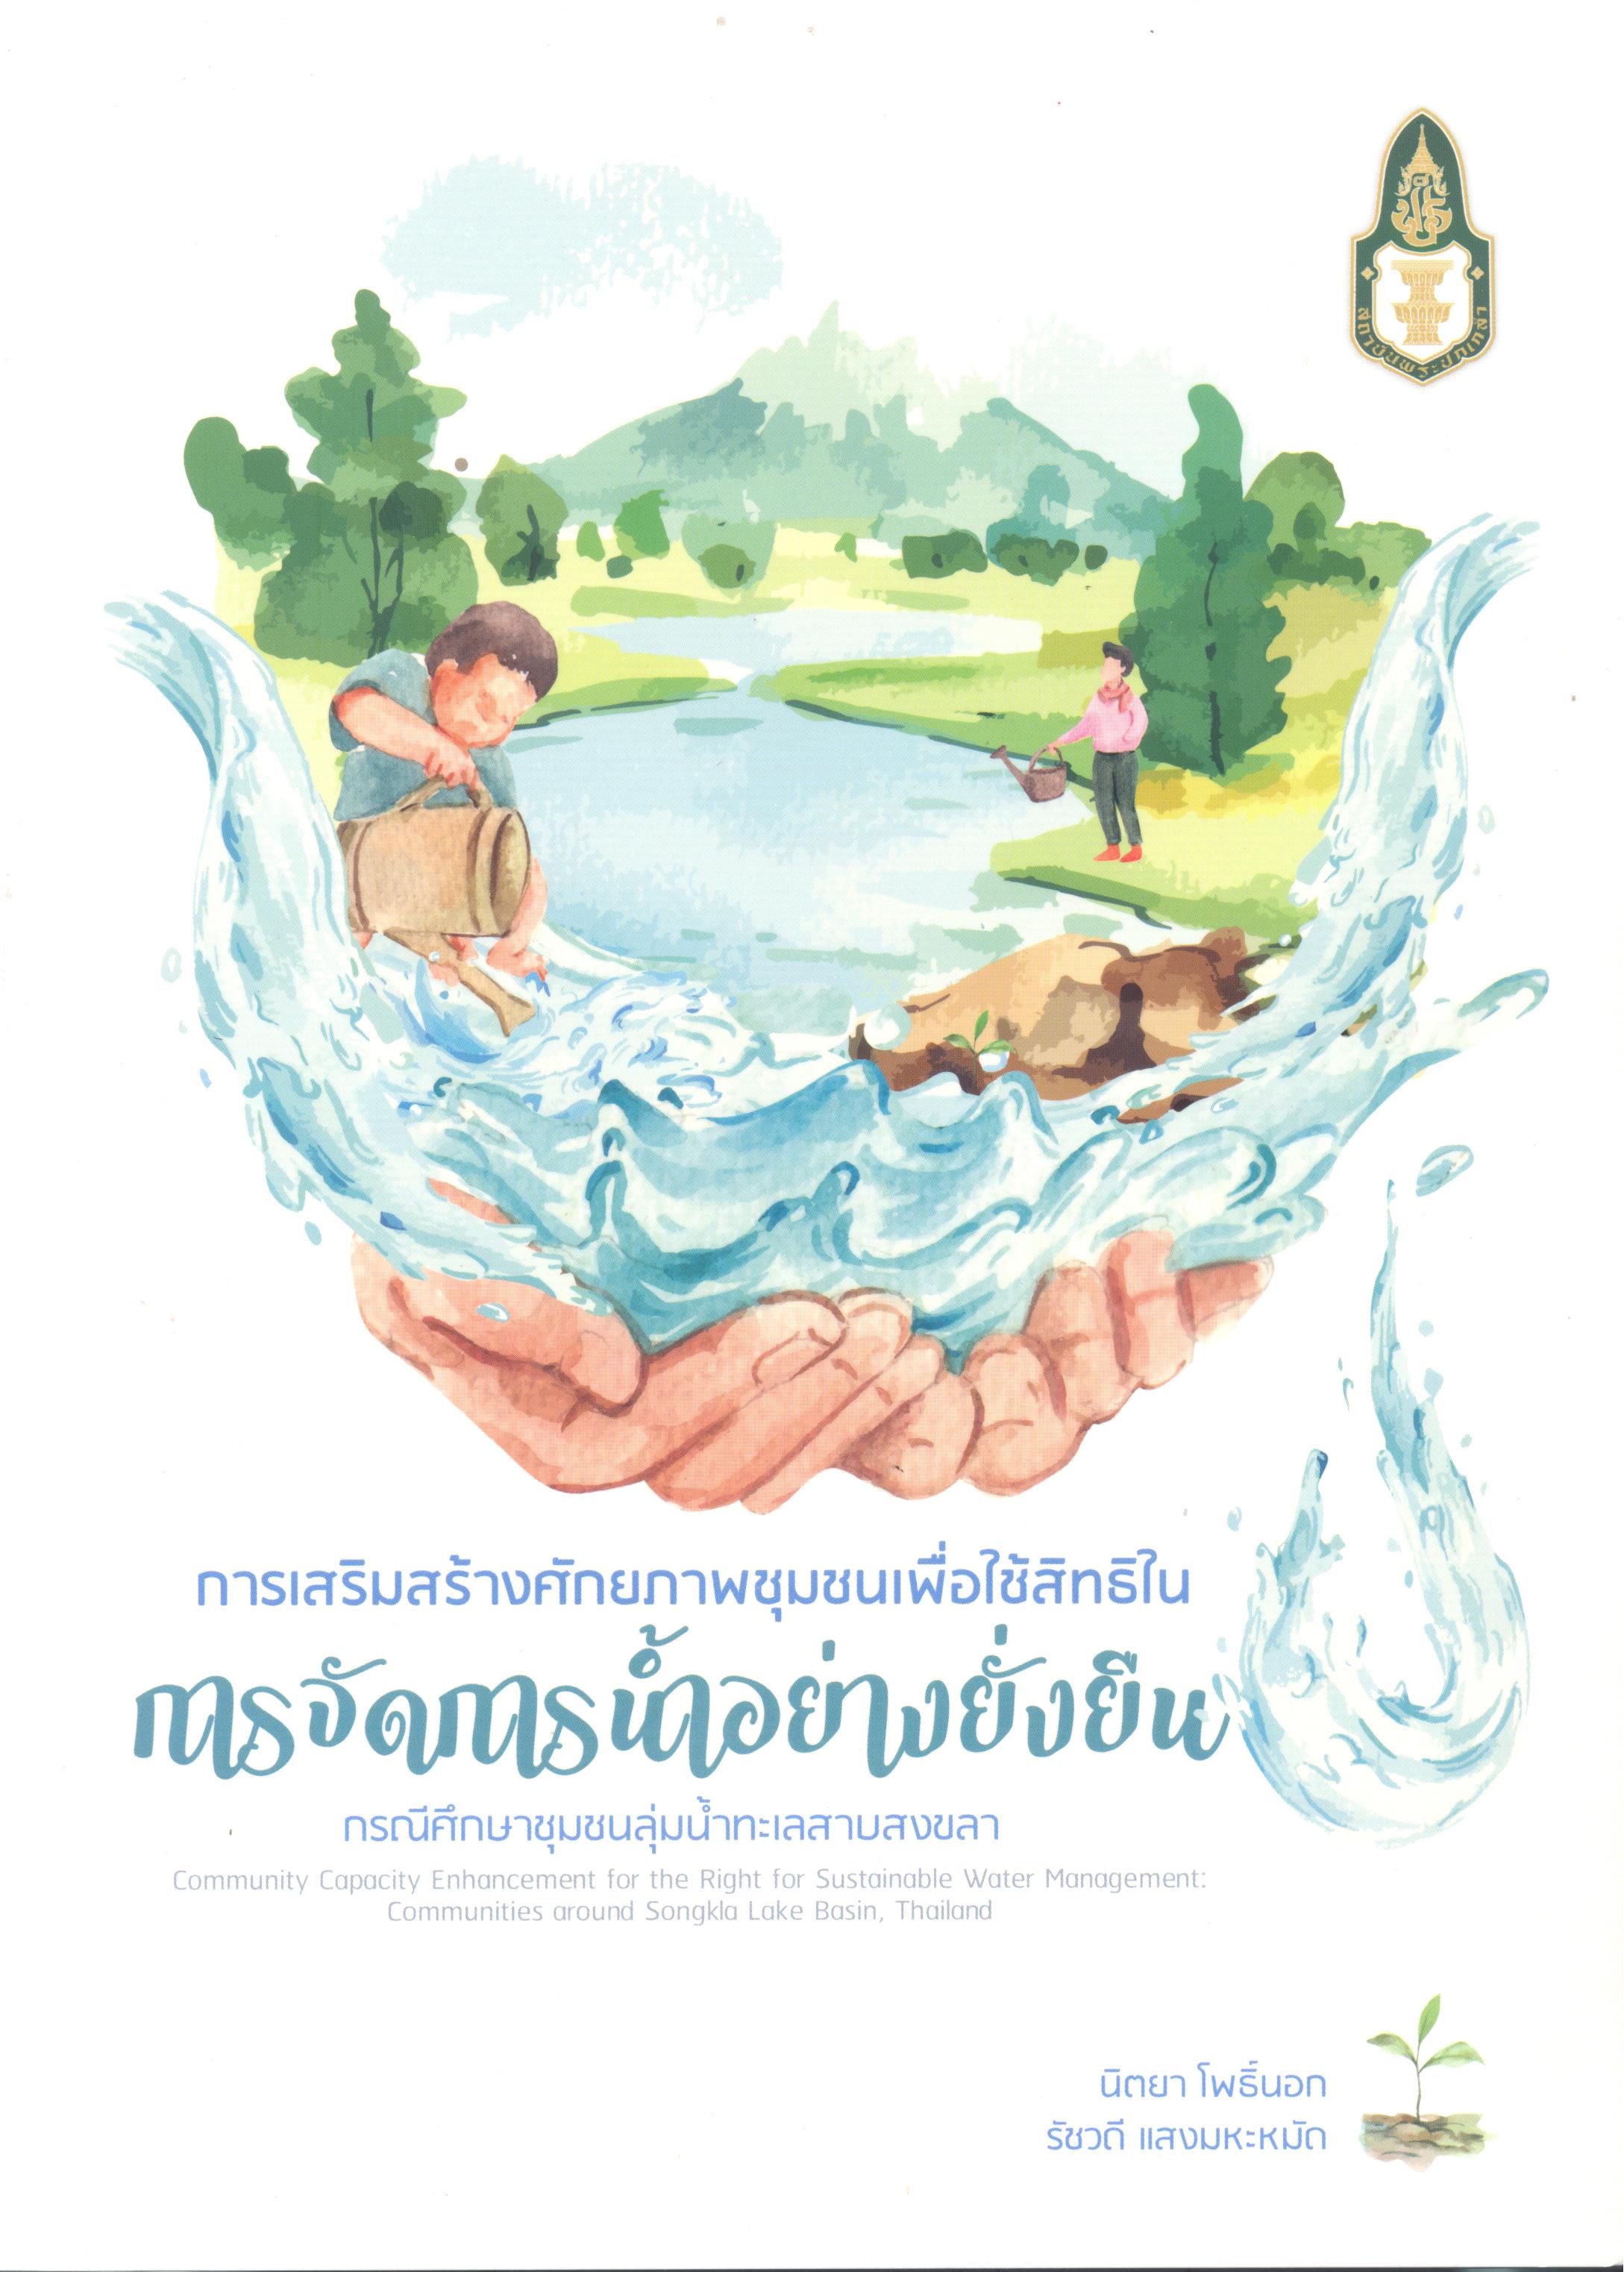 รเสริมสร้างศักยภาพชุมชนเพื่อใช้สิทธิในการจัดการน้ำอย่างยั่งยืน : กรณีศึกษาชุมชนลุ่มน้ำทะเลสาบสงขลา = Community Capacity Enhancement for the Right for Sustainable Water Management : Communities Around Songkla Lake Basin, Thailand